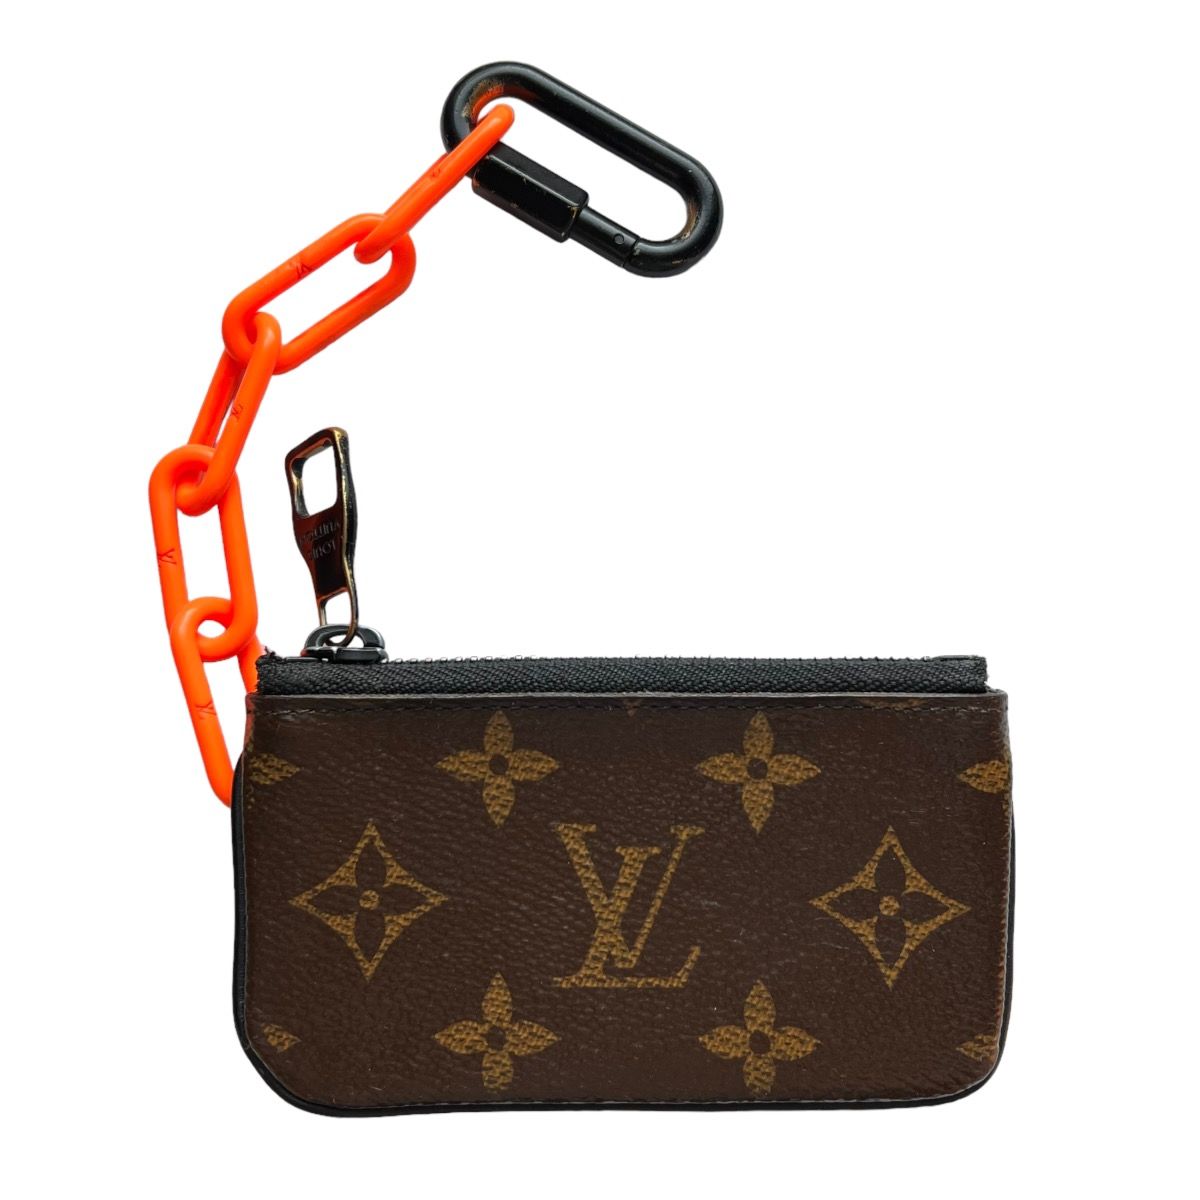 Louis Vuitton ECLIPSE Pocket Organizer Wallet Review & Unboxing (Virgil  Abloh) 